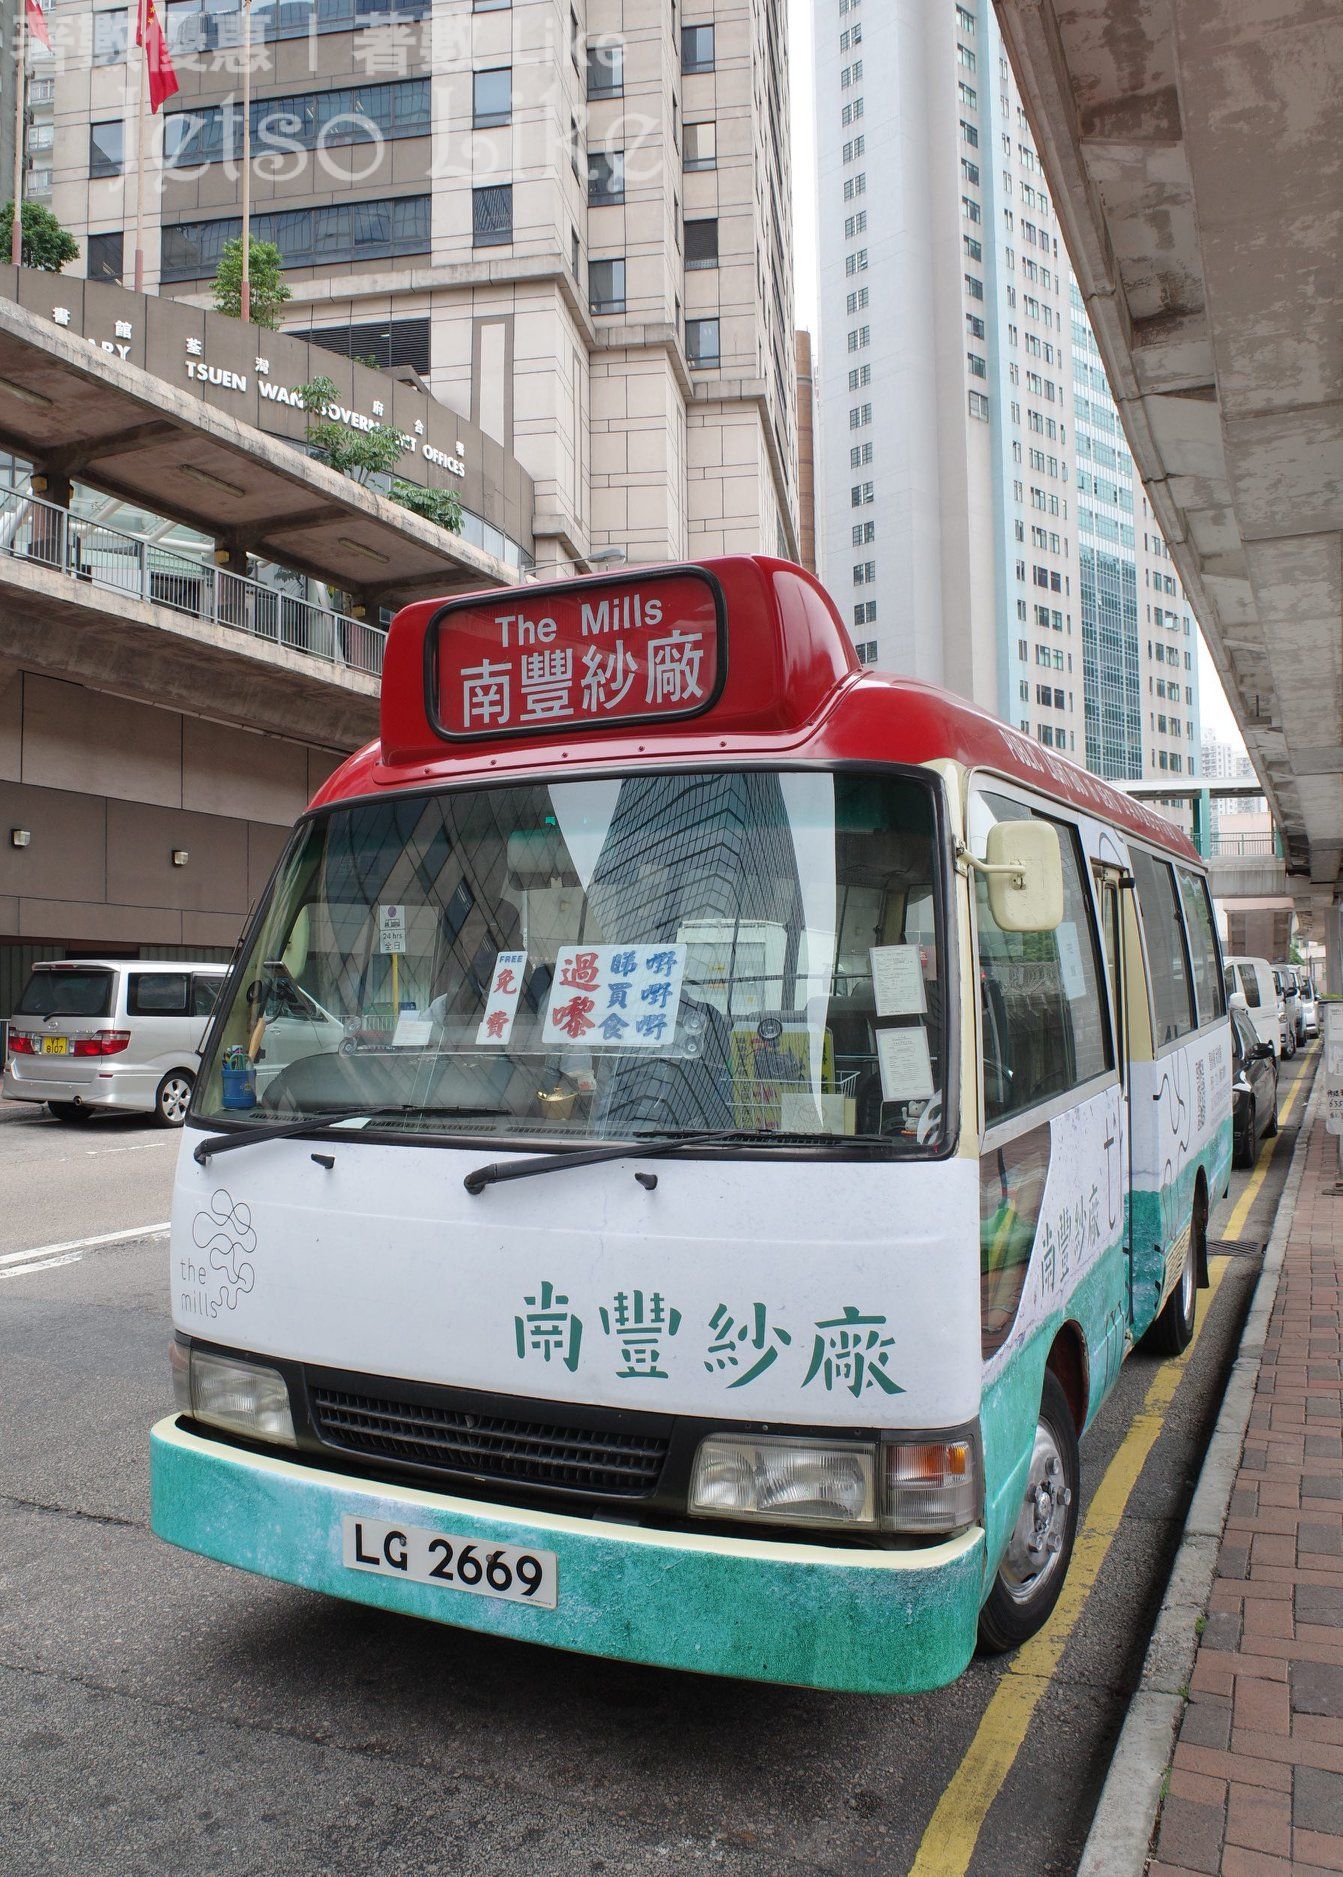 南豐紗廠 免費穿梭巴士服務 往返港鐵荃灣站及南豐紗廠